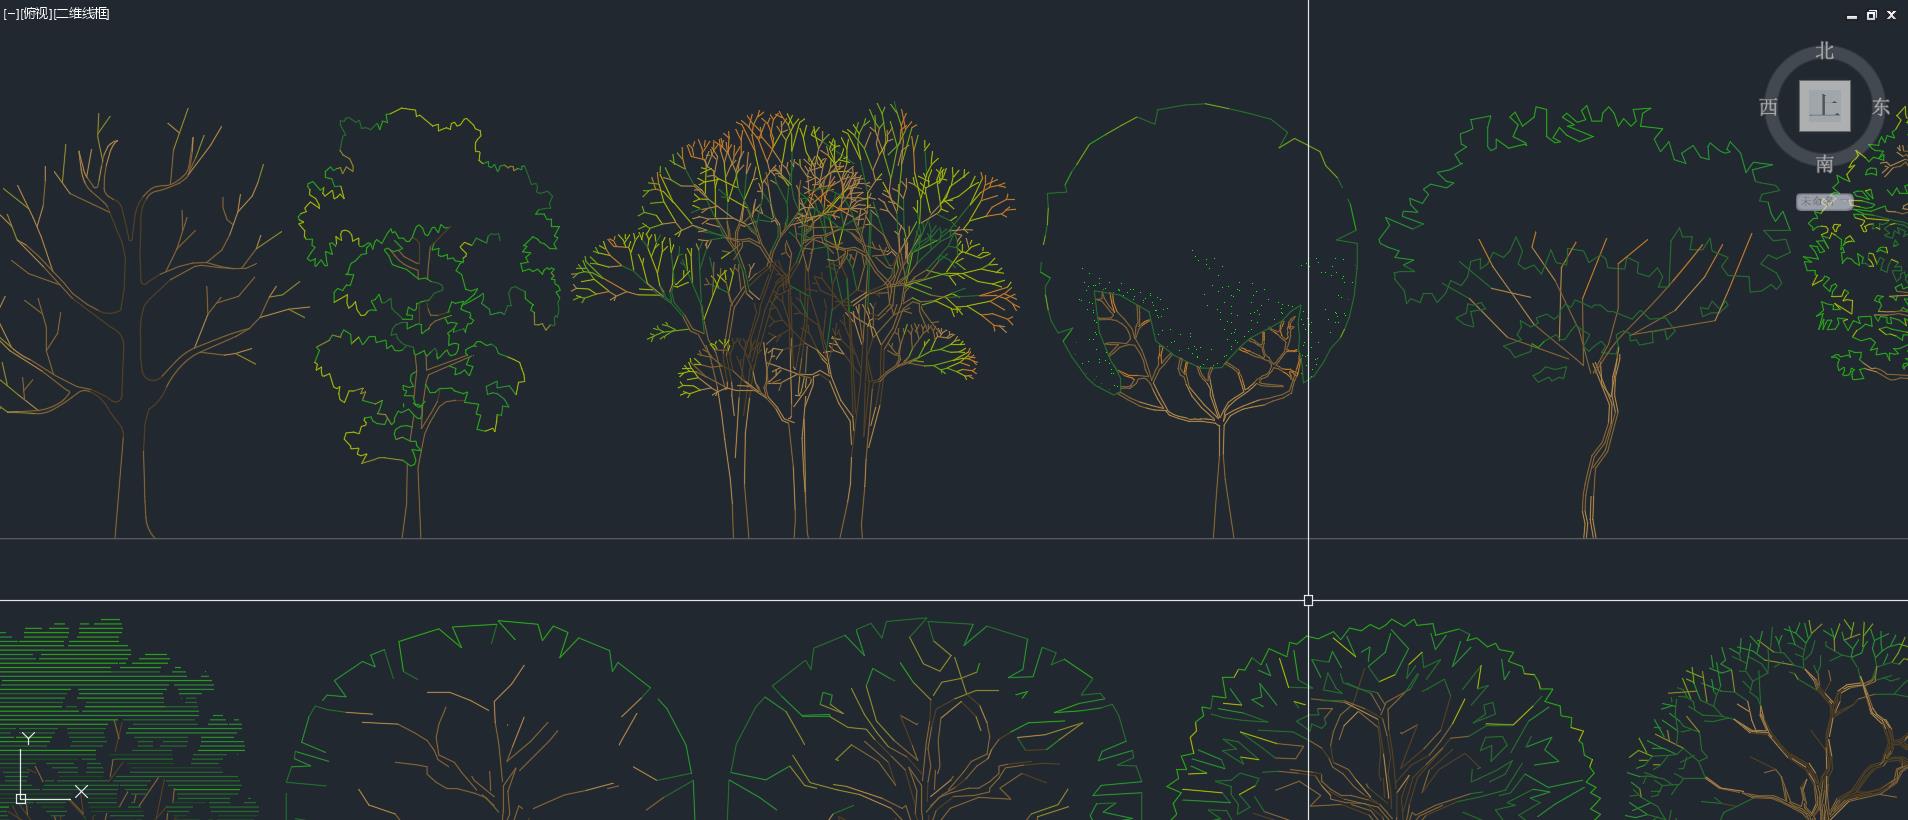 景觀綠植CAD,景觀素材下載,CAD圖塊,綠植CAD圖塊,景觀CAD圖塊,景觀樹CAD圖庫